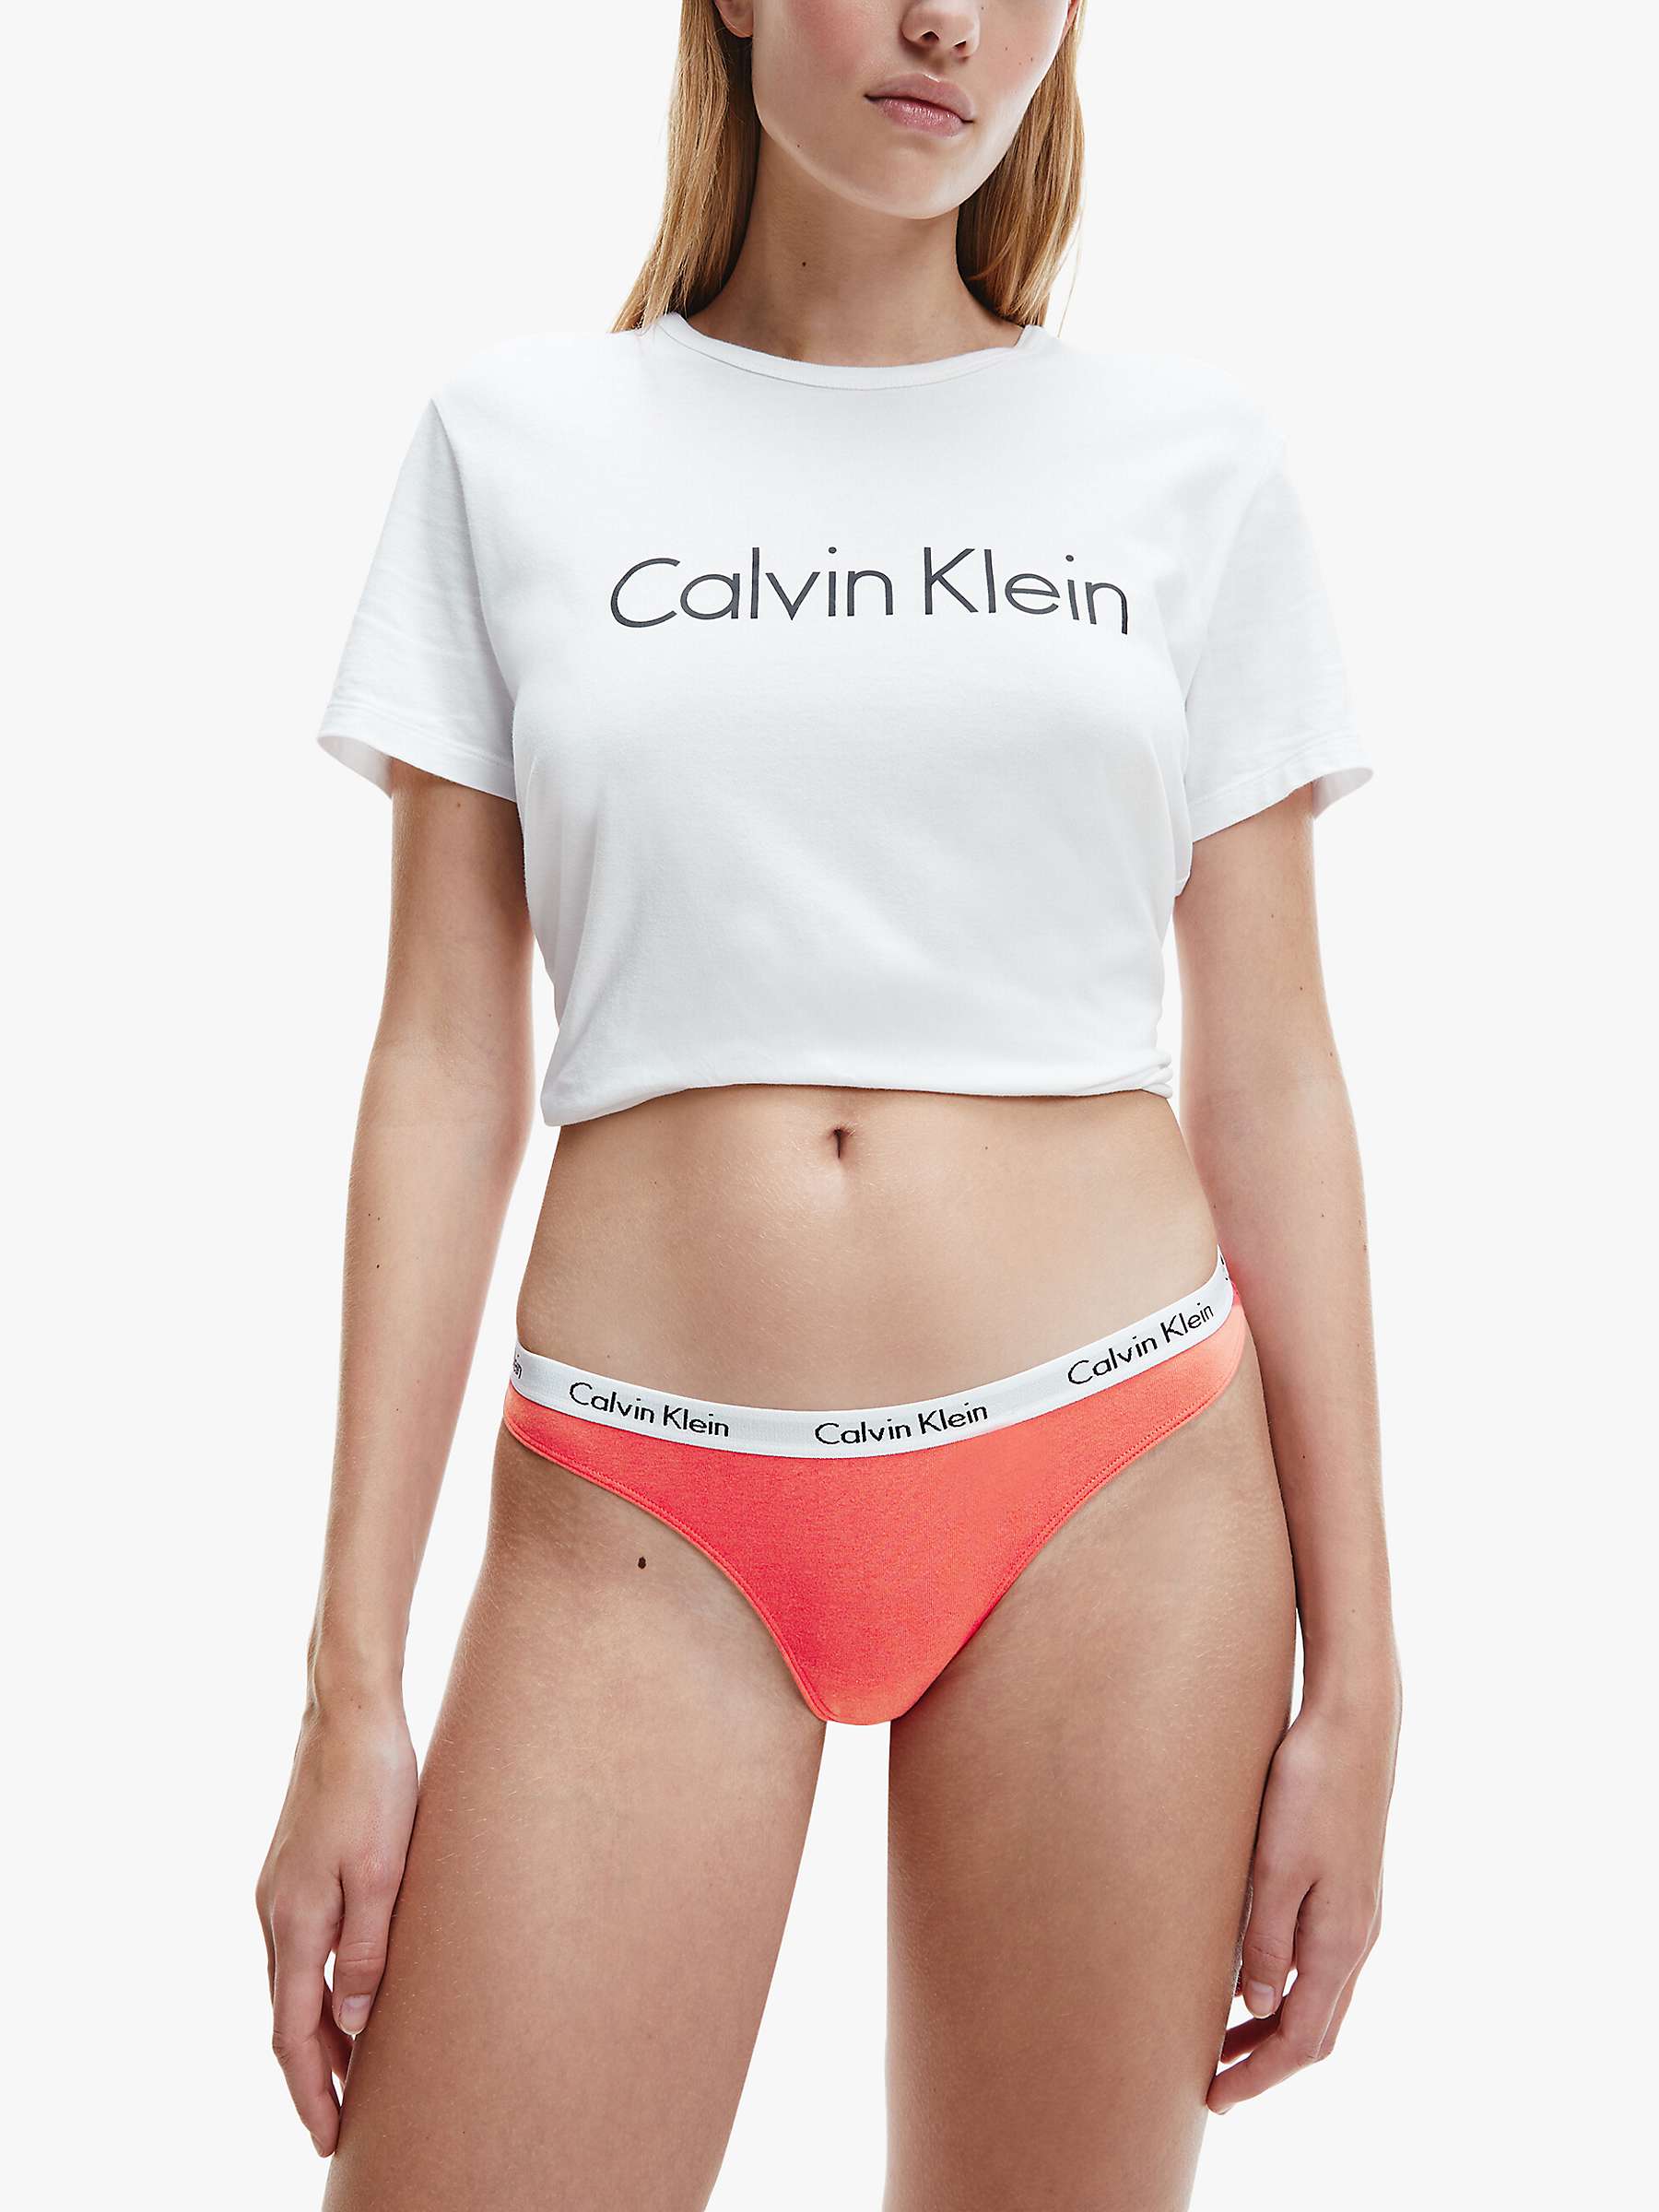 Buy Calvin Klein Carousel Thong Online at johnlewis.com